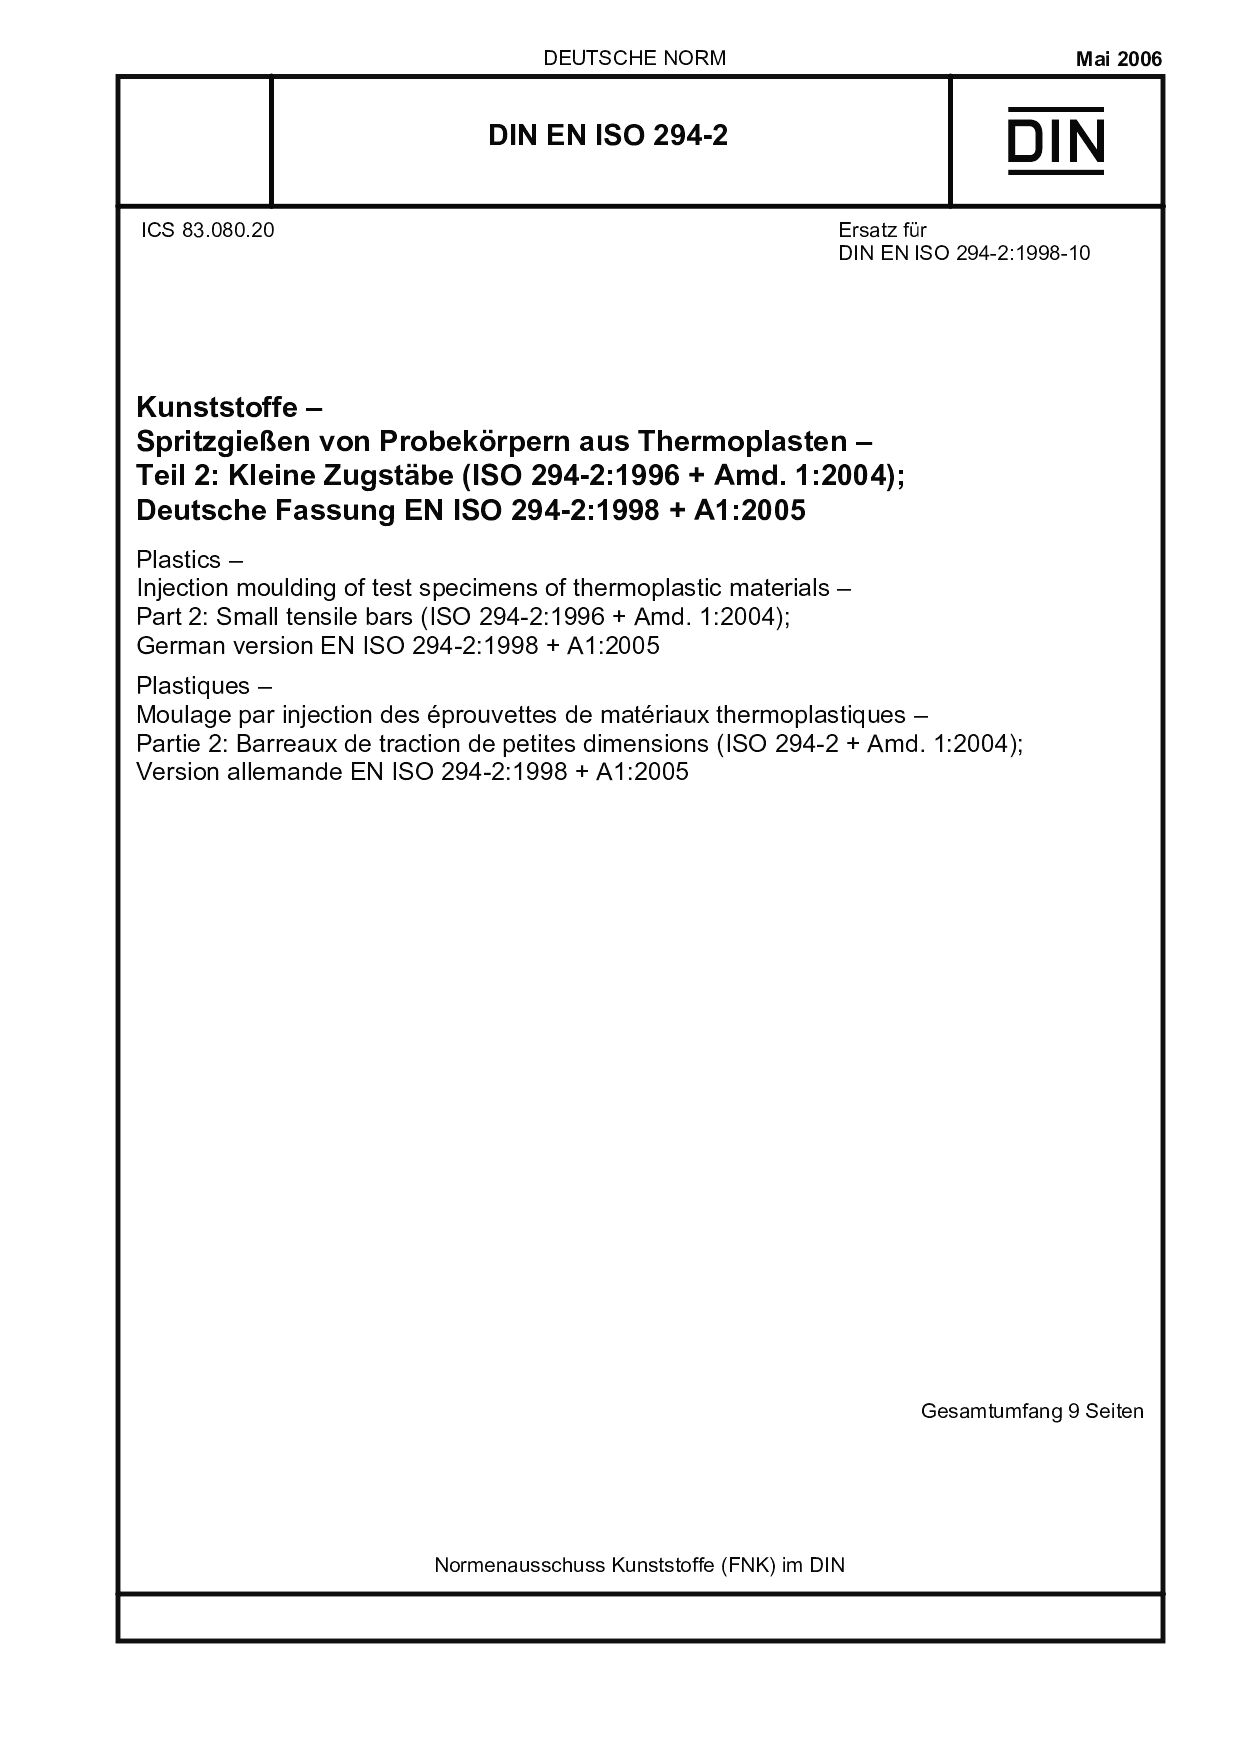 DIN EN ISO 294-2:2006封面图